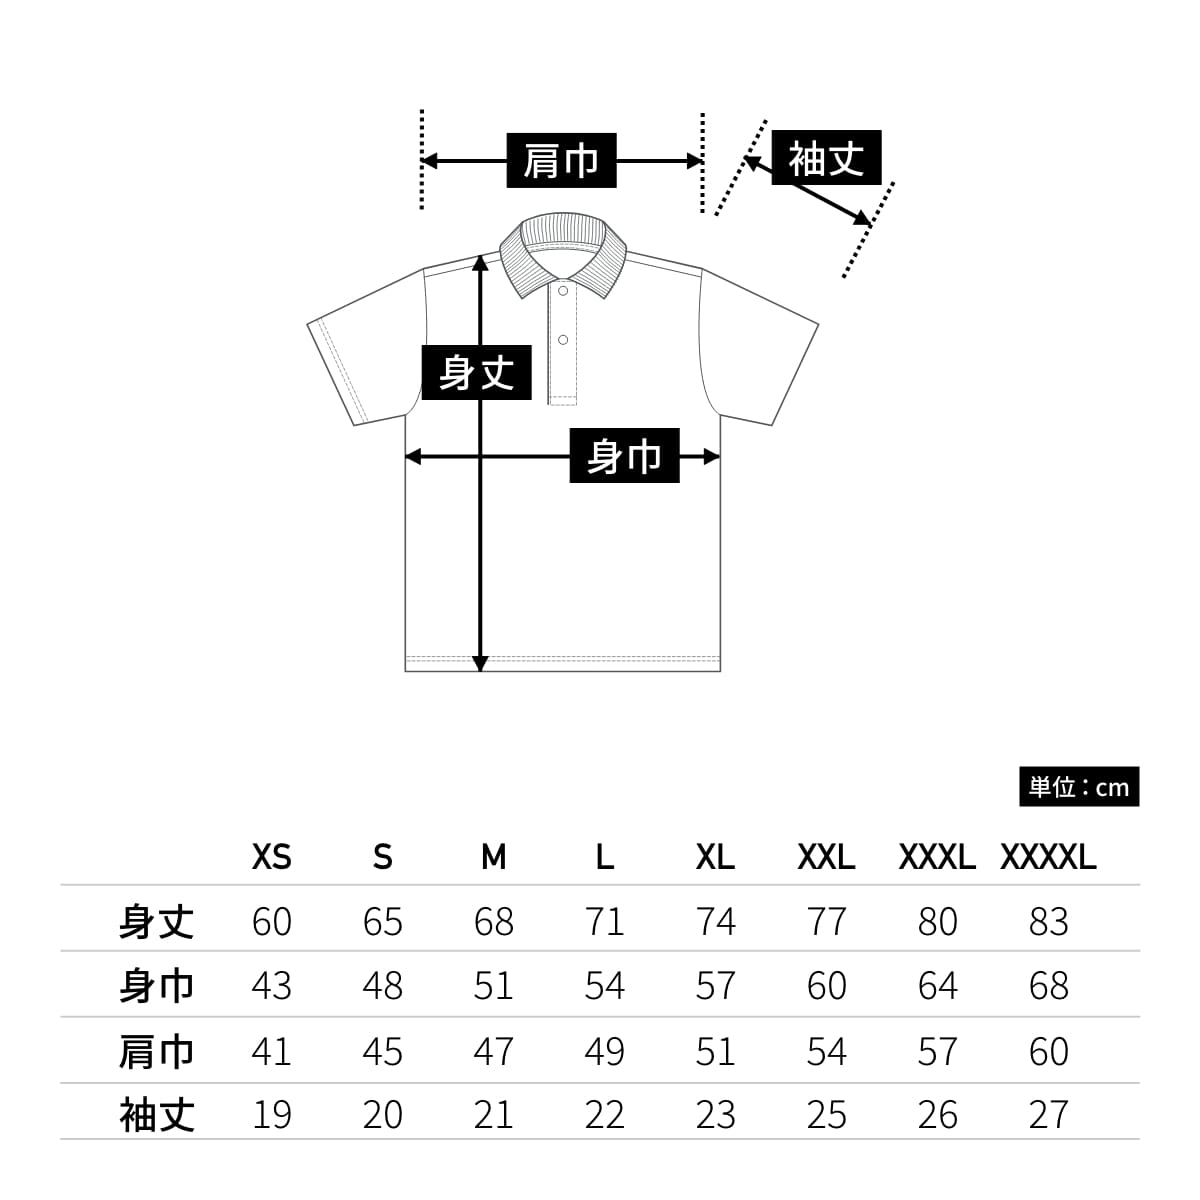 4.1オンス ドライアスレチック ポロシャツ | メンズ | 1枚 | 5910-01 | ホワイト